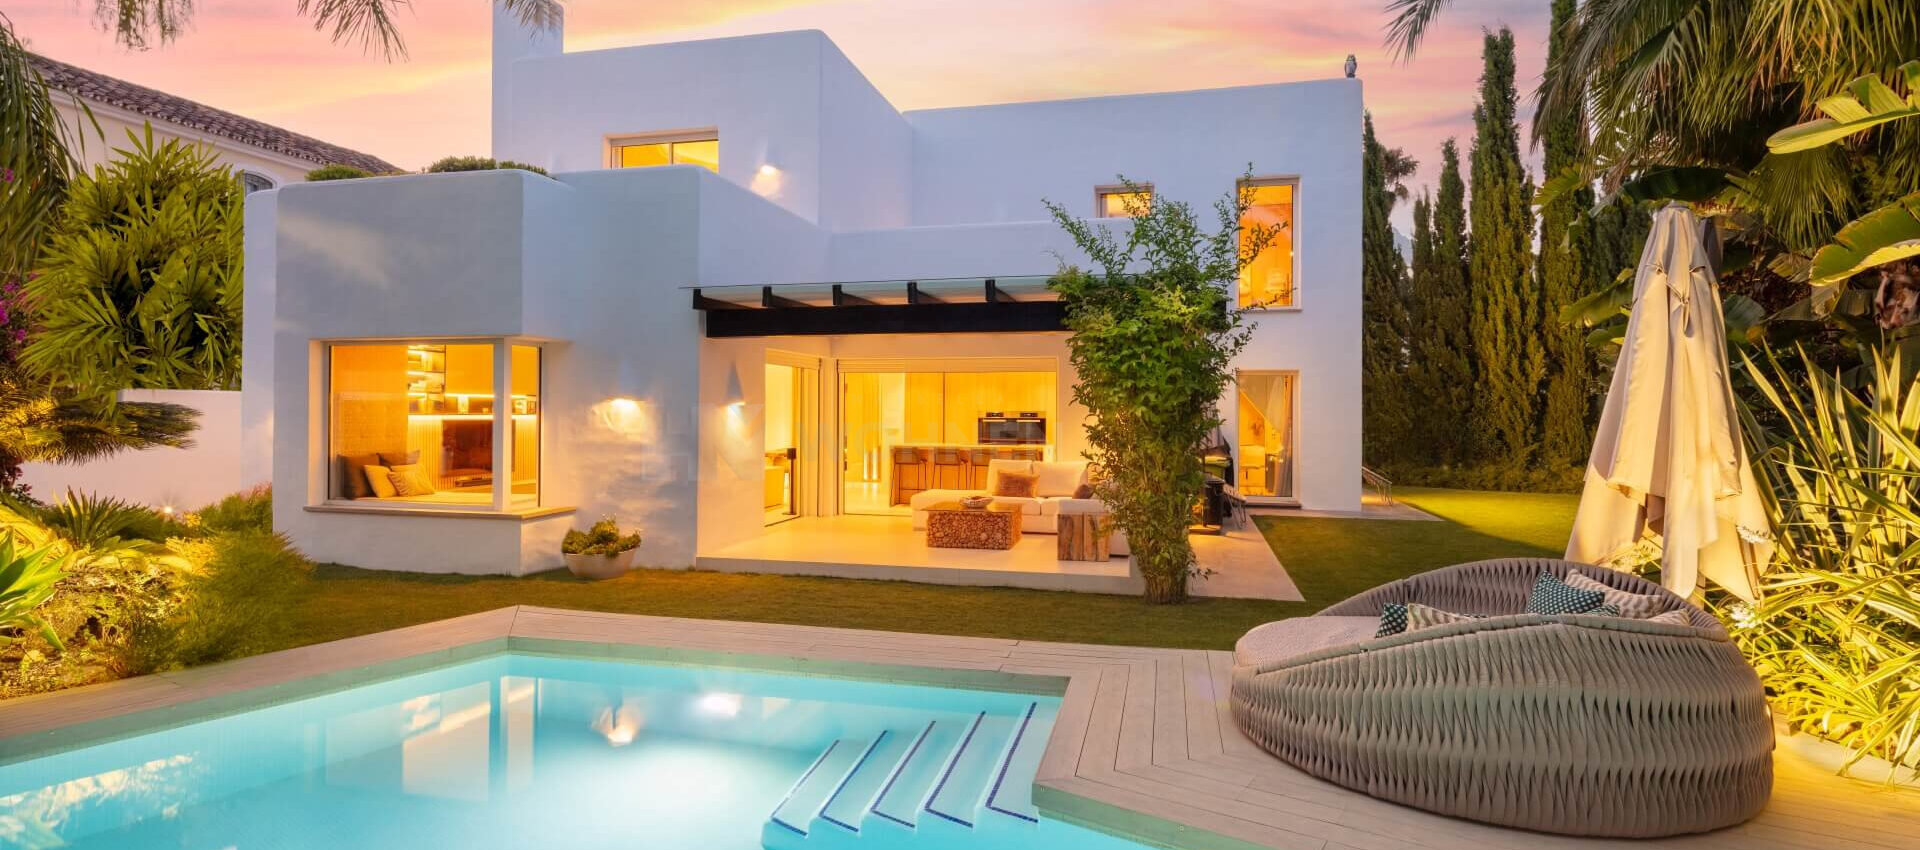 Moderne Villa nur wenige Schritte vom Strand in Marbella entfernt